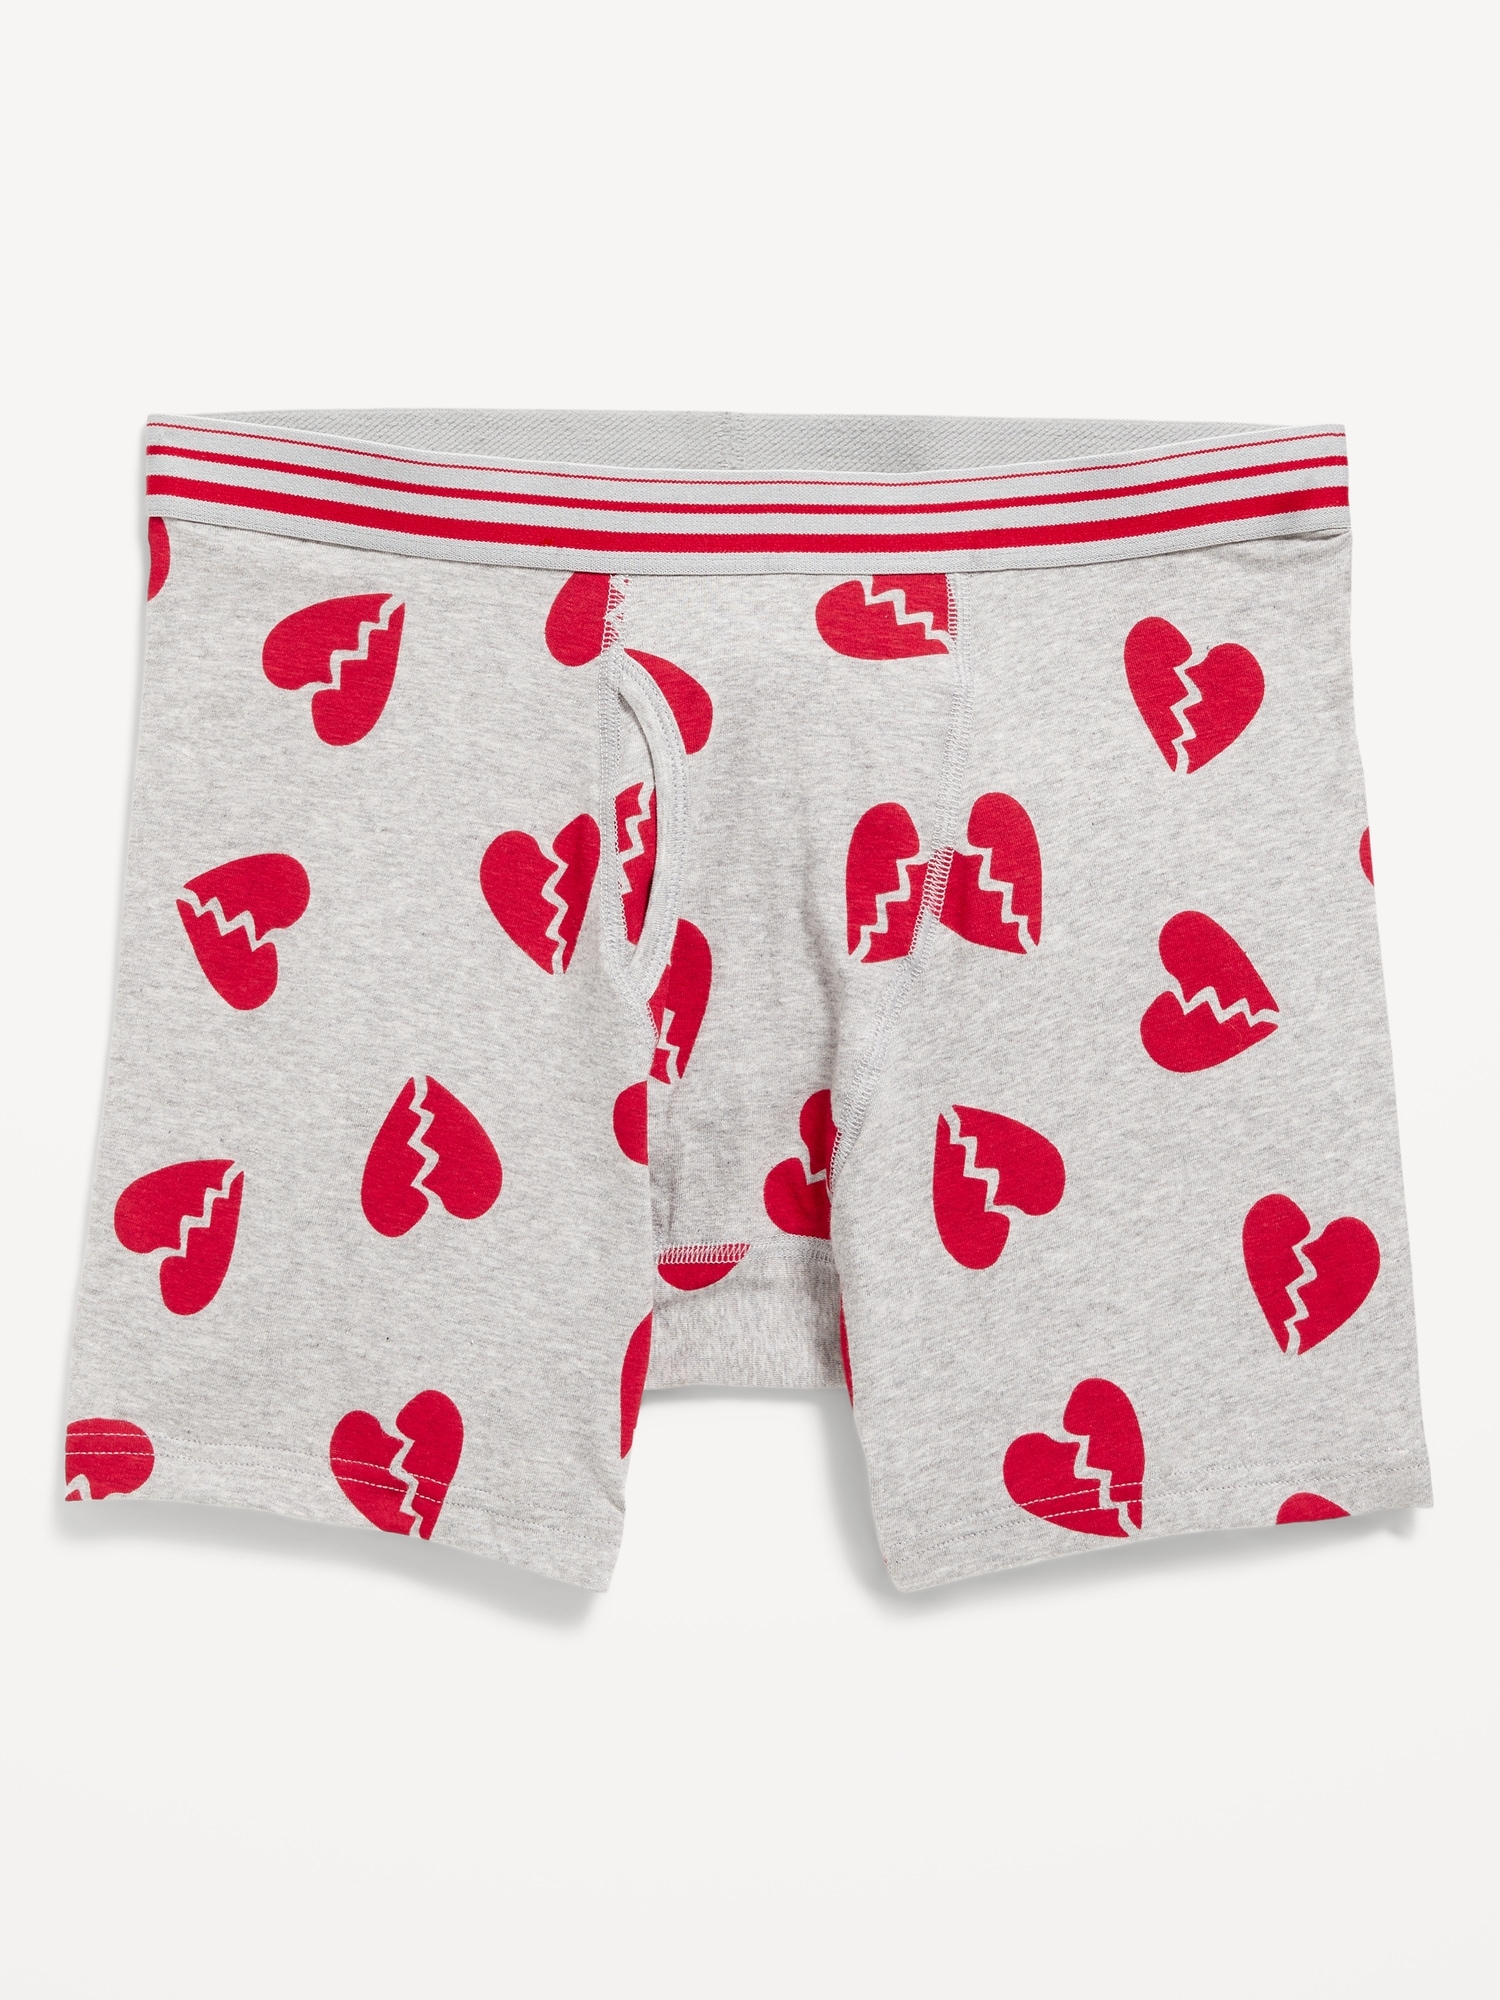 Printed Boxer-Brief Underwear for Men -- 6.25-inch inseam